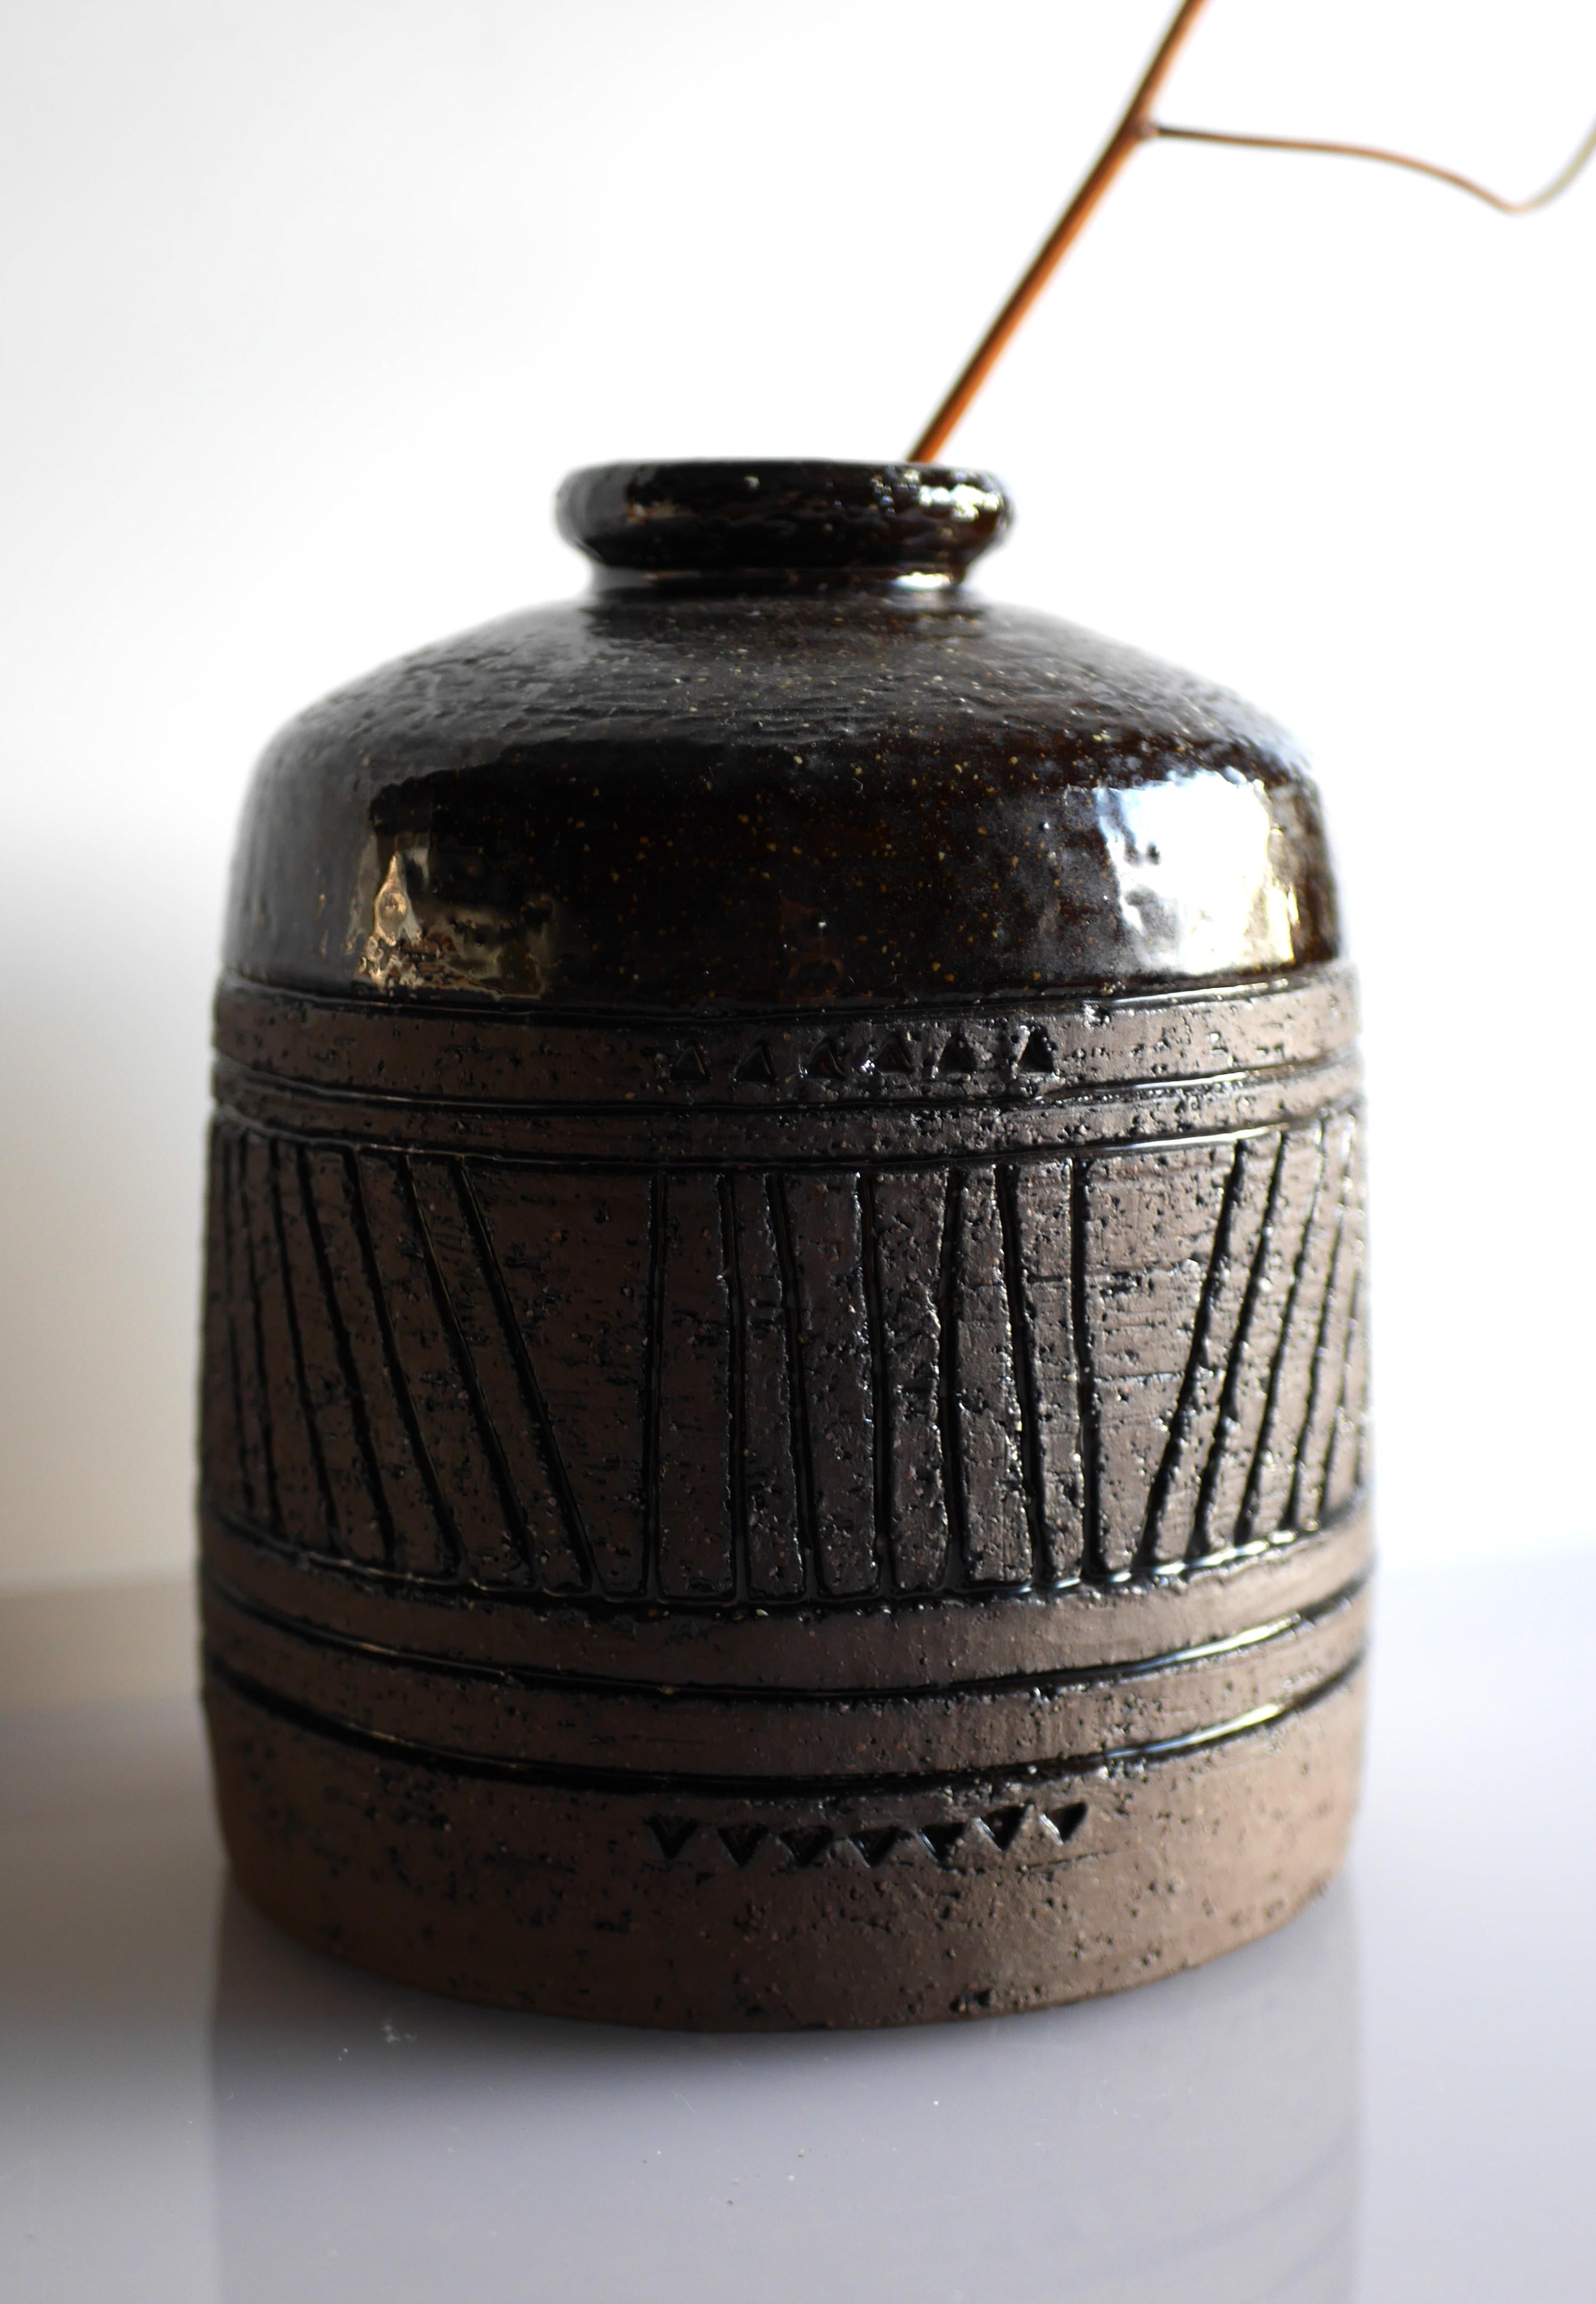 Swedish Modernist, earthenware ceramic vase by Inger Persson for Rörstrand, Sweden